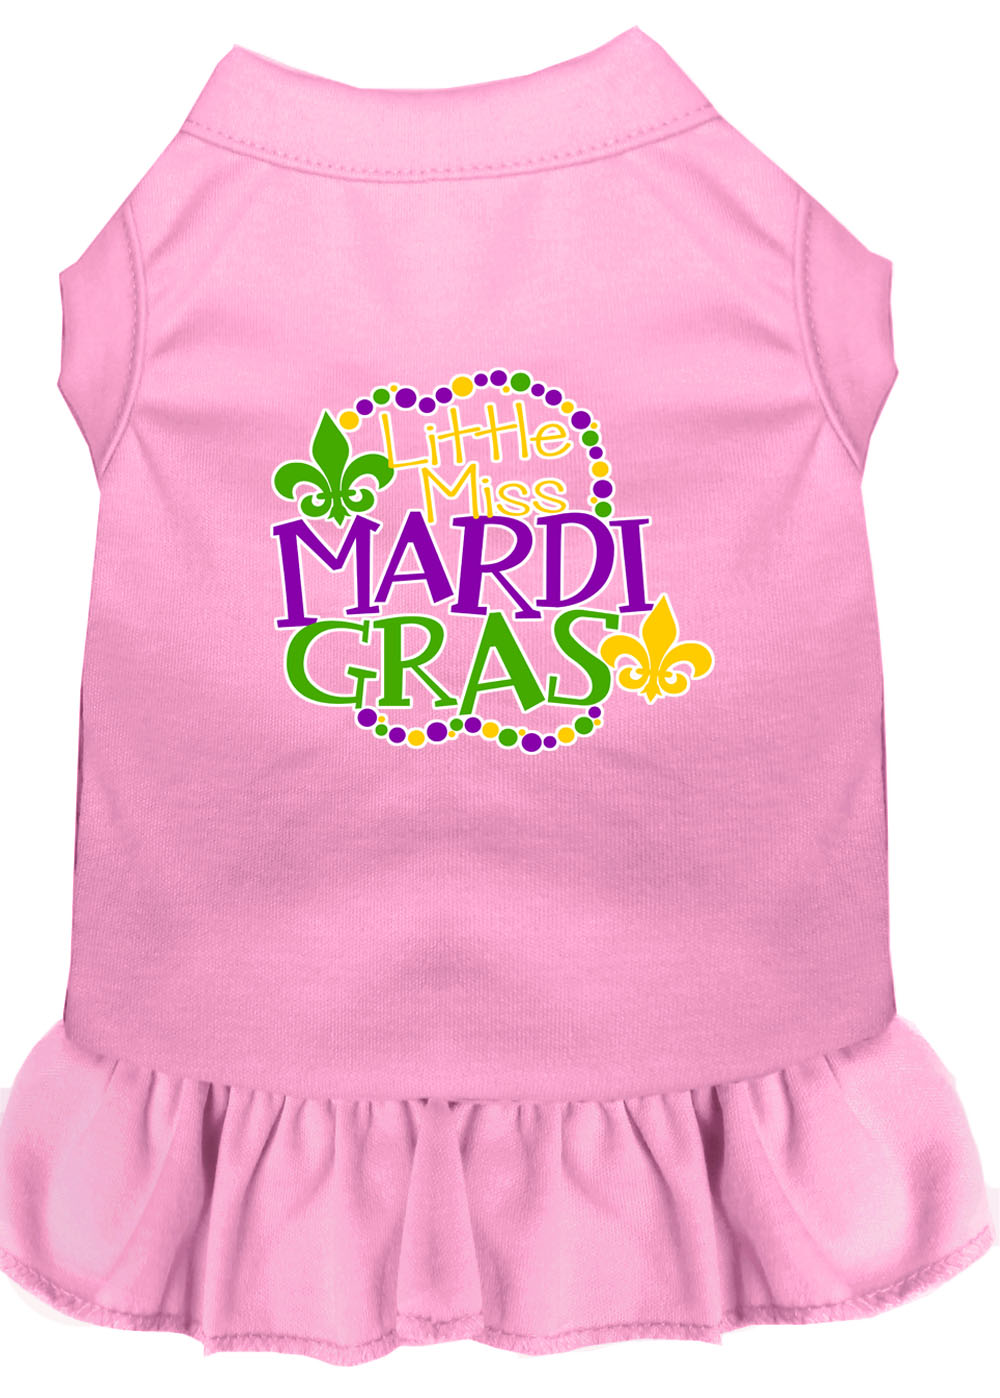 Miss Mardi Gras Screen Print Mardi Gras Dog Dress Light Pink XXL